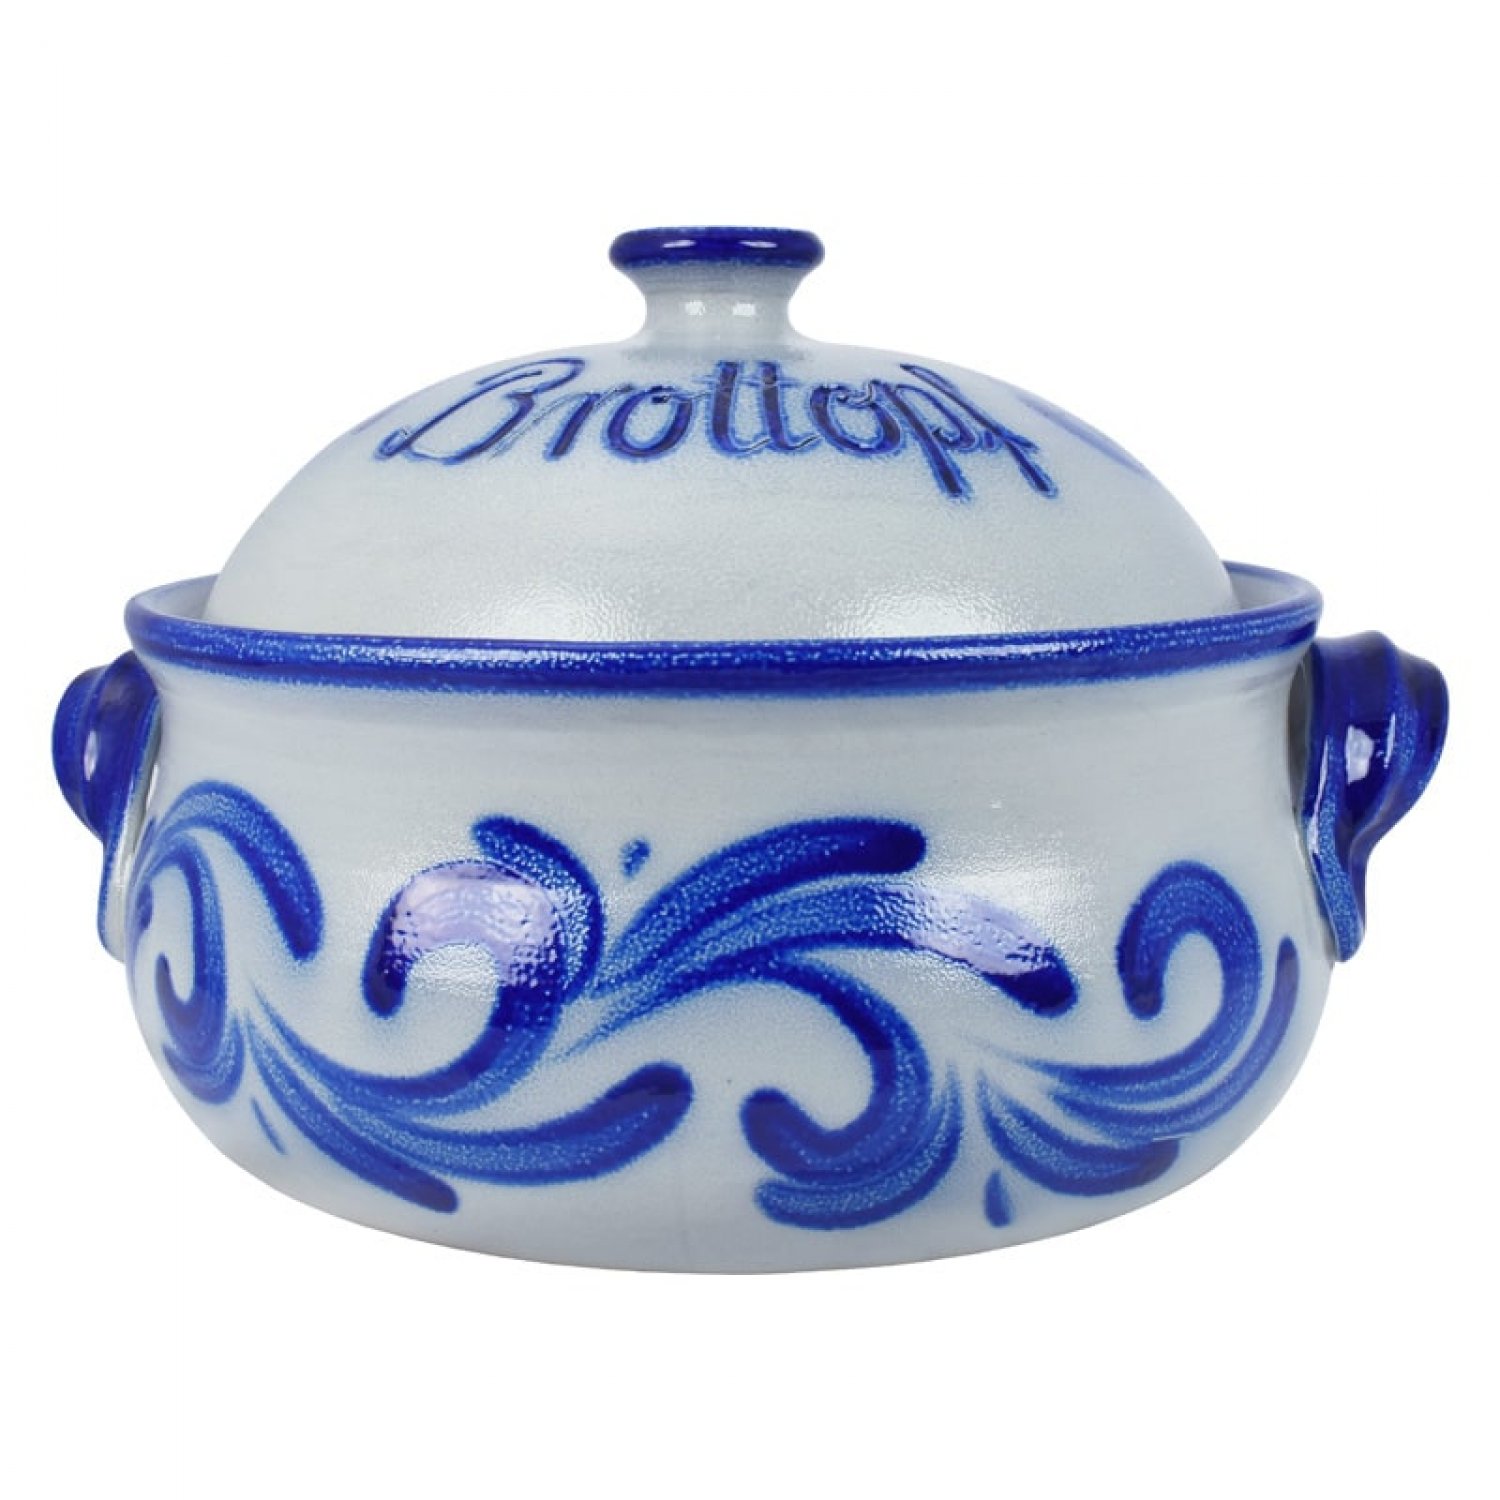 Bild zu Brottopf Keramik rund Dekor blau